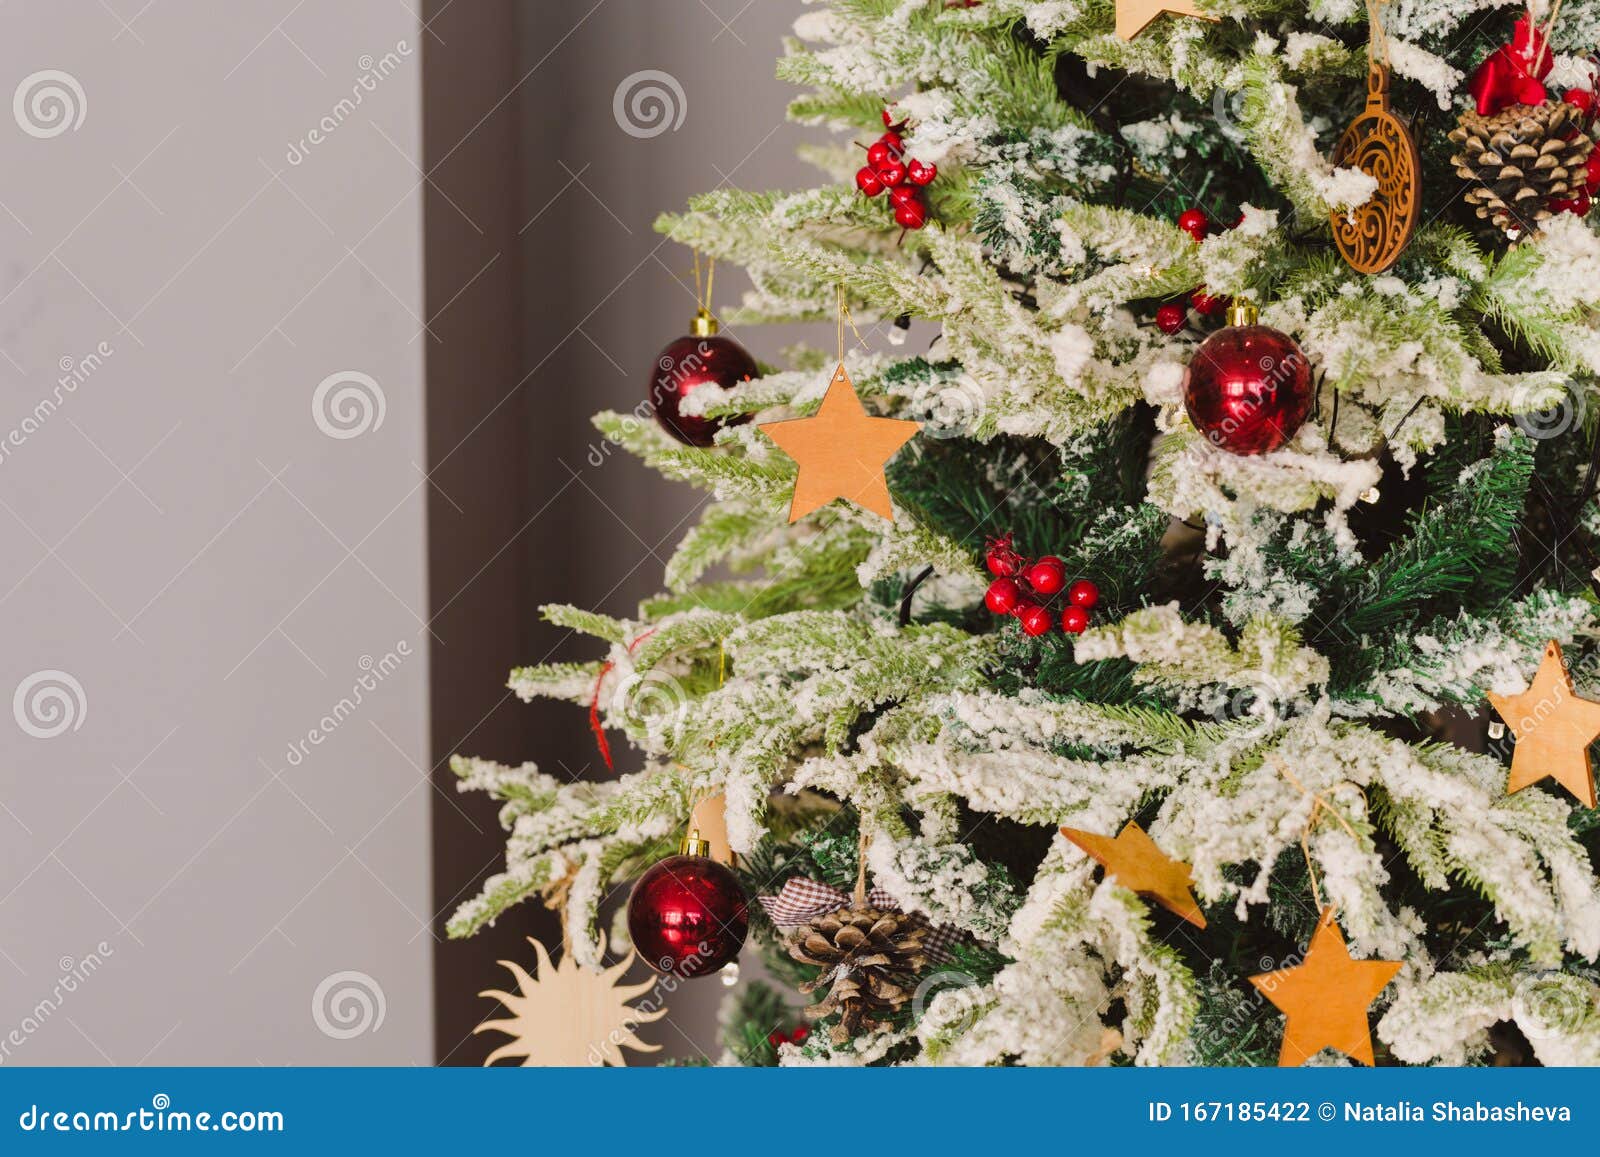 Buon Natale E Capodanno.Buon Natale E Capodanno 2020 Bokech Sfocato Di Sottofondo Albero Di Natale Fotografia Stock Immagine Di Bauble Closeup 167185422